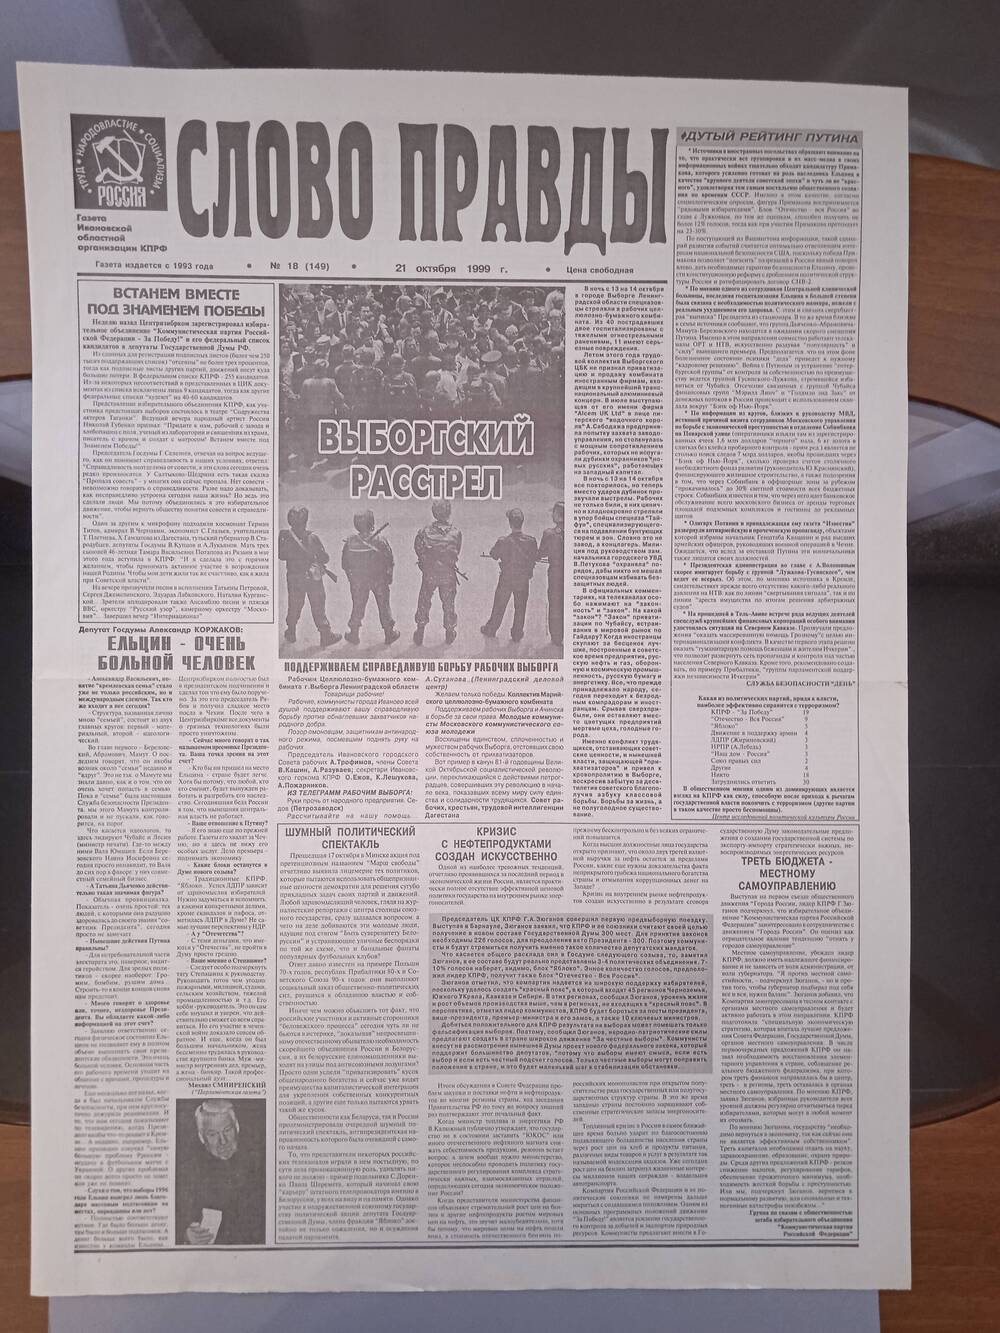 Газета «Слово Правды» № 18 от 21 октября 1999 г. изд-е Ивановской обл. организации КПРФ.